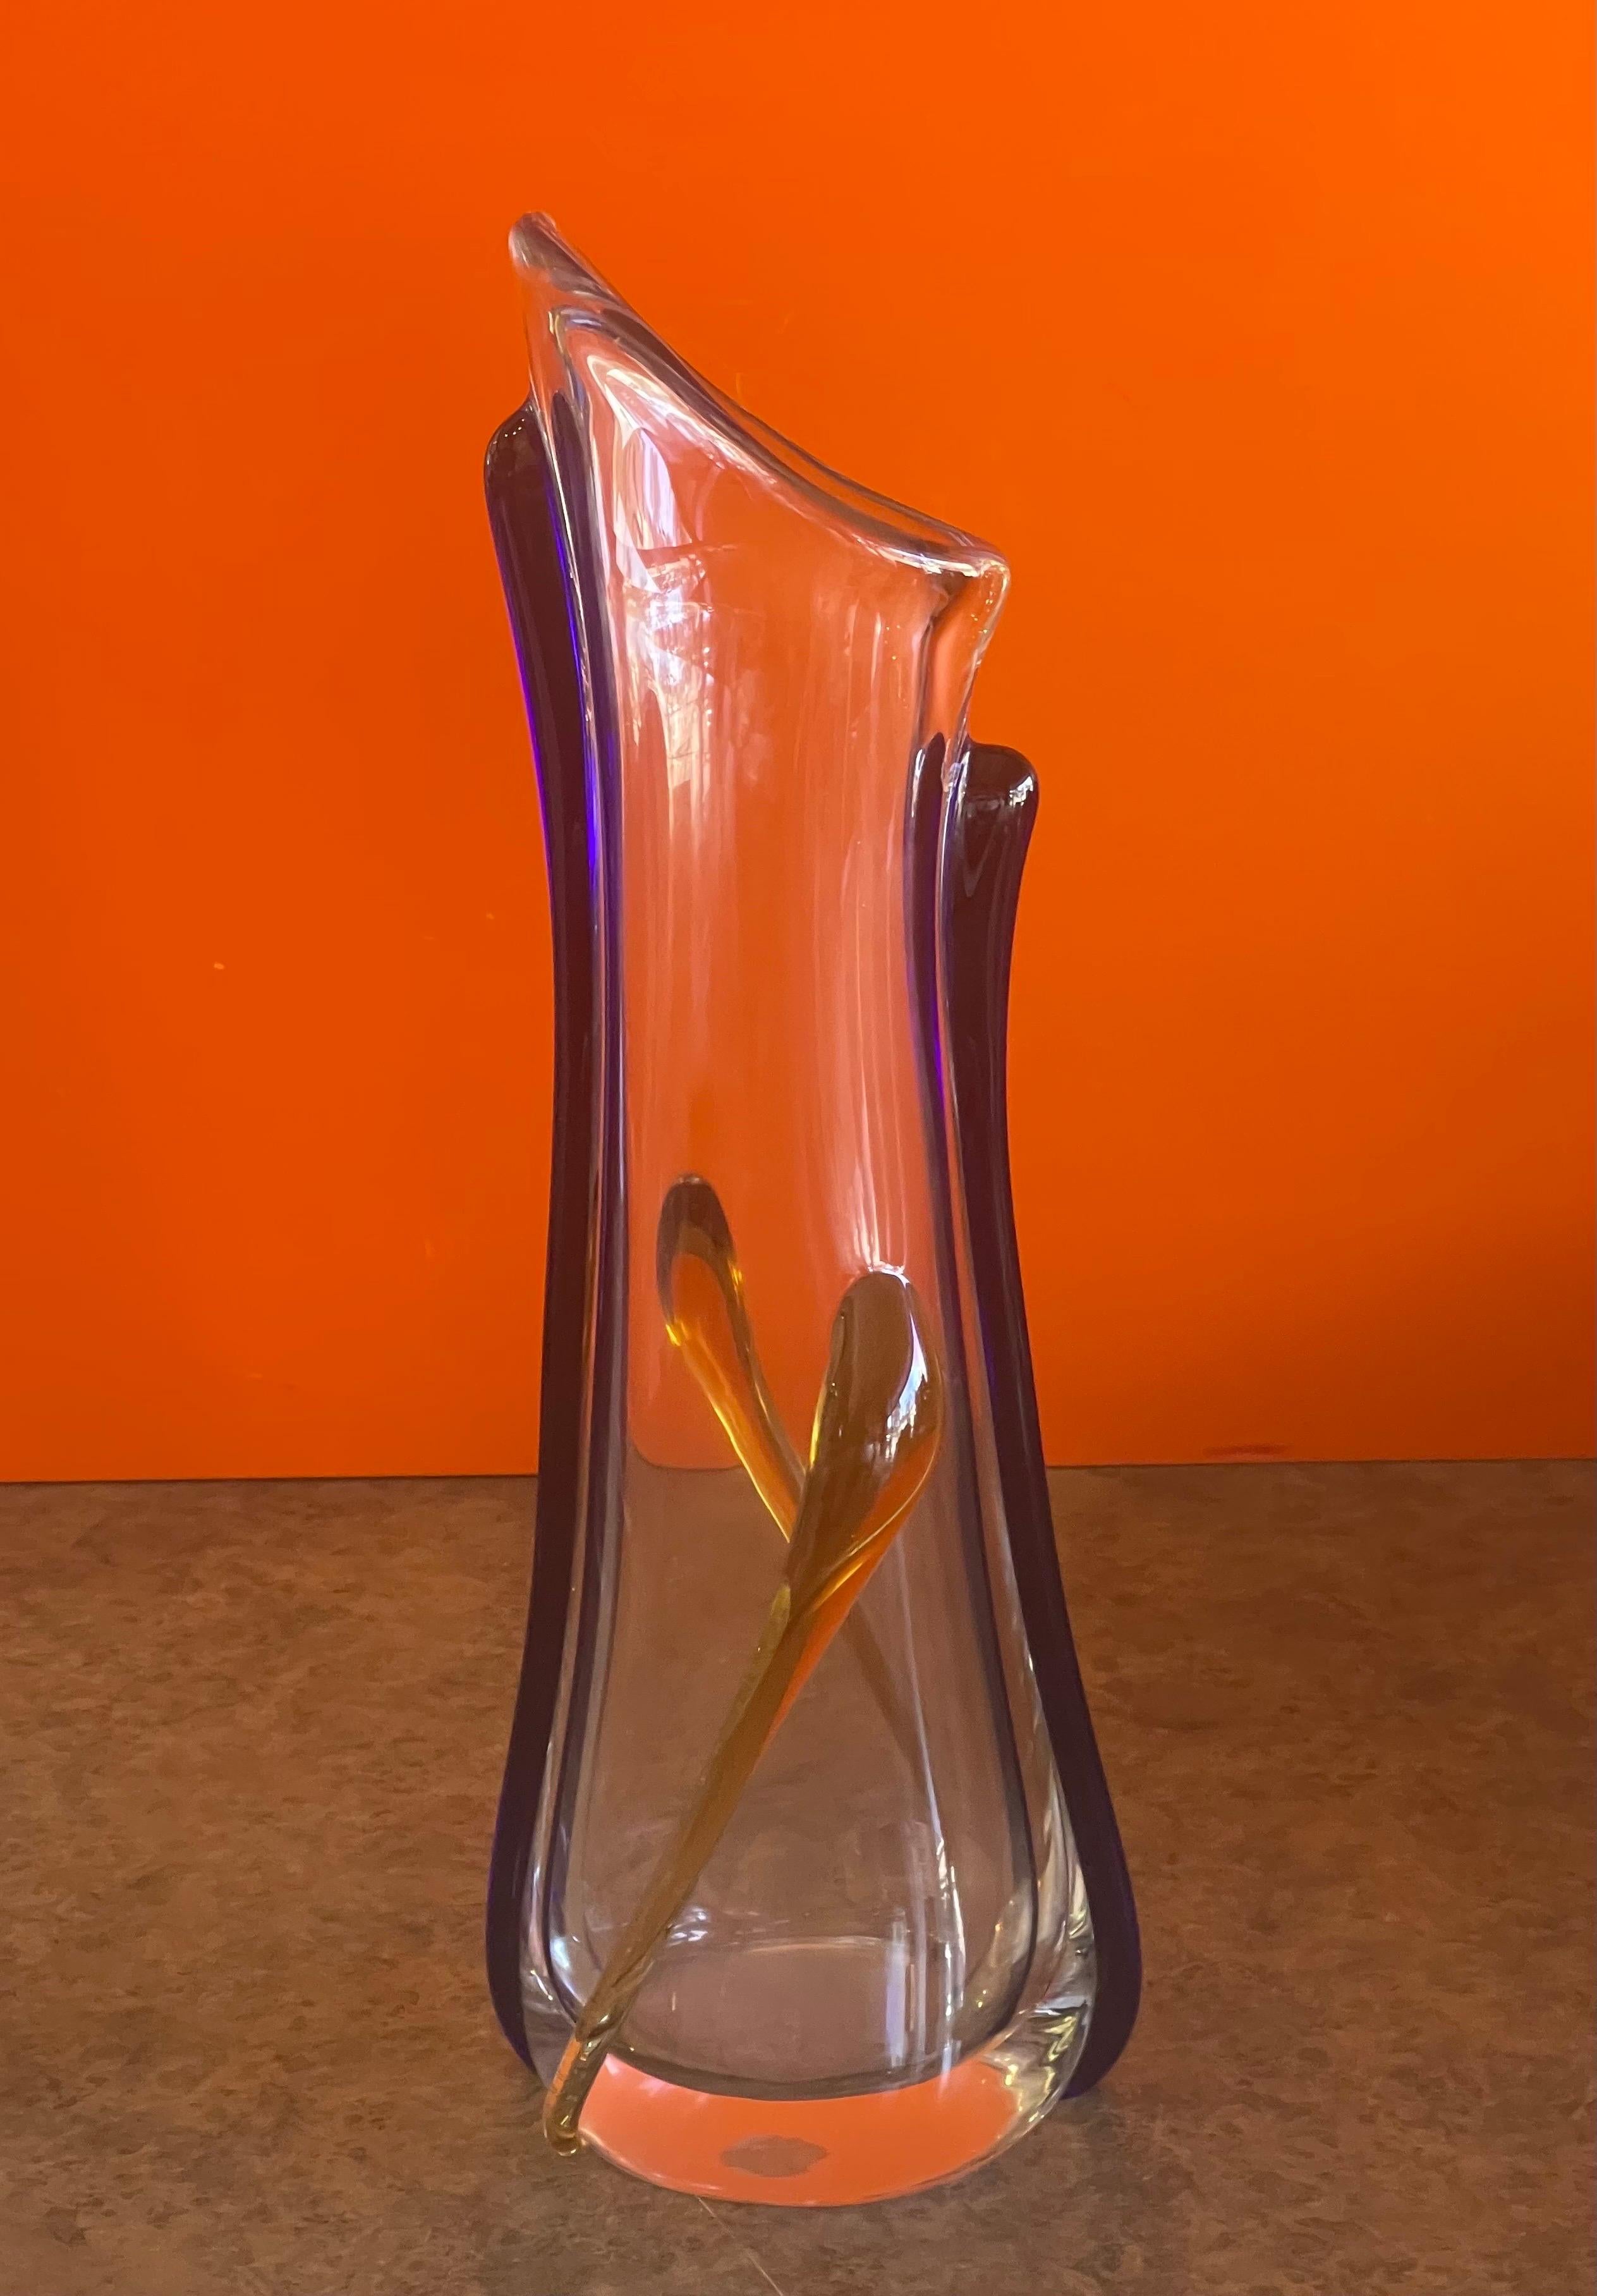 Grand vase en verre d'art de Murano, vers les années 1990. Il s'agit d'une magnifique pièce transparente très lourde avec un travail de verre complexe en bleu et en jaune. Le vase est en très bon état, sans éclats ni fissures et mesure 6,5 